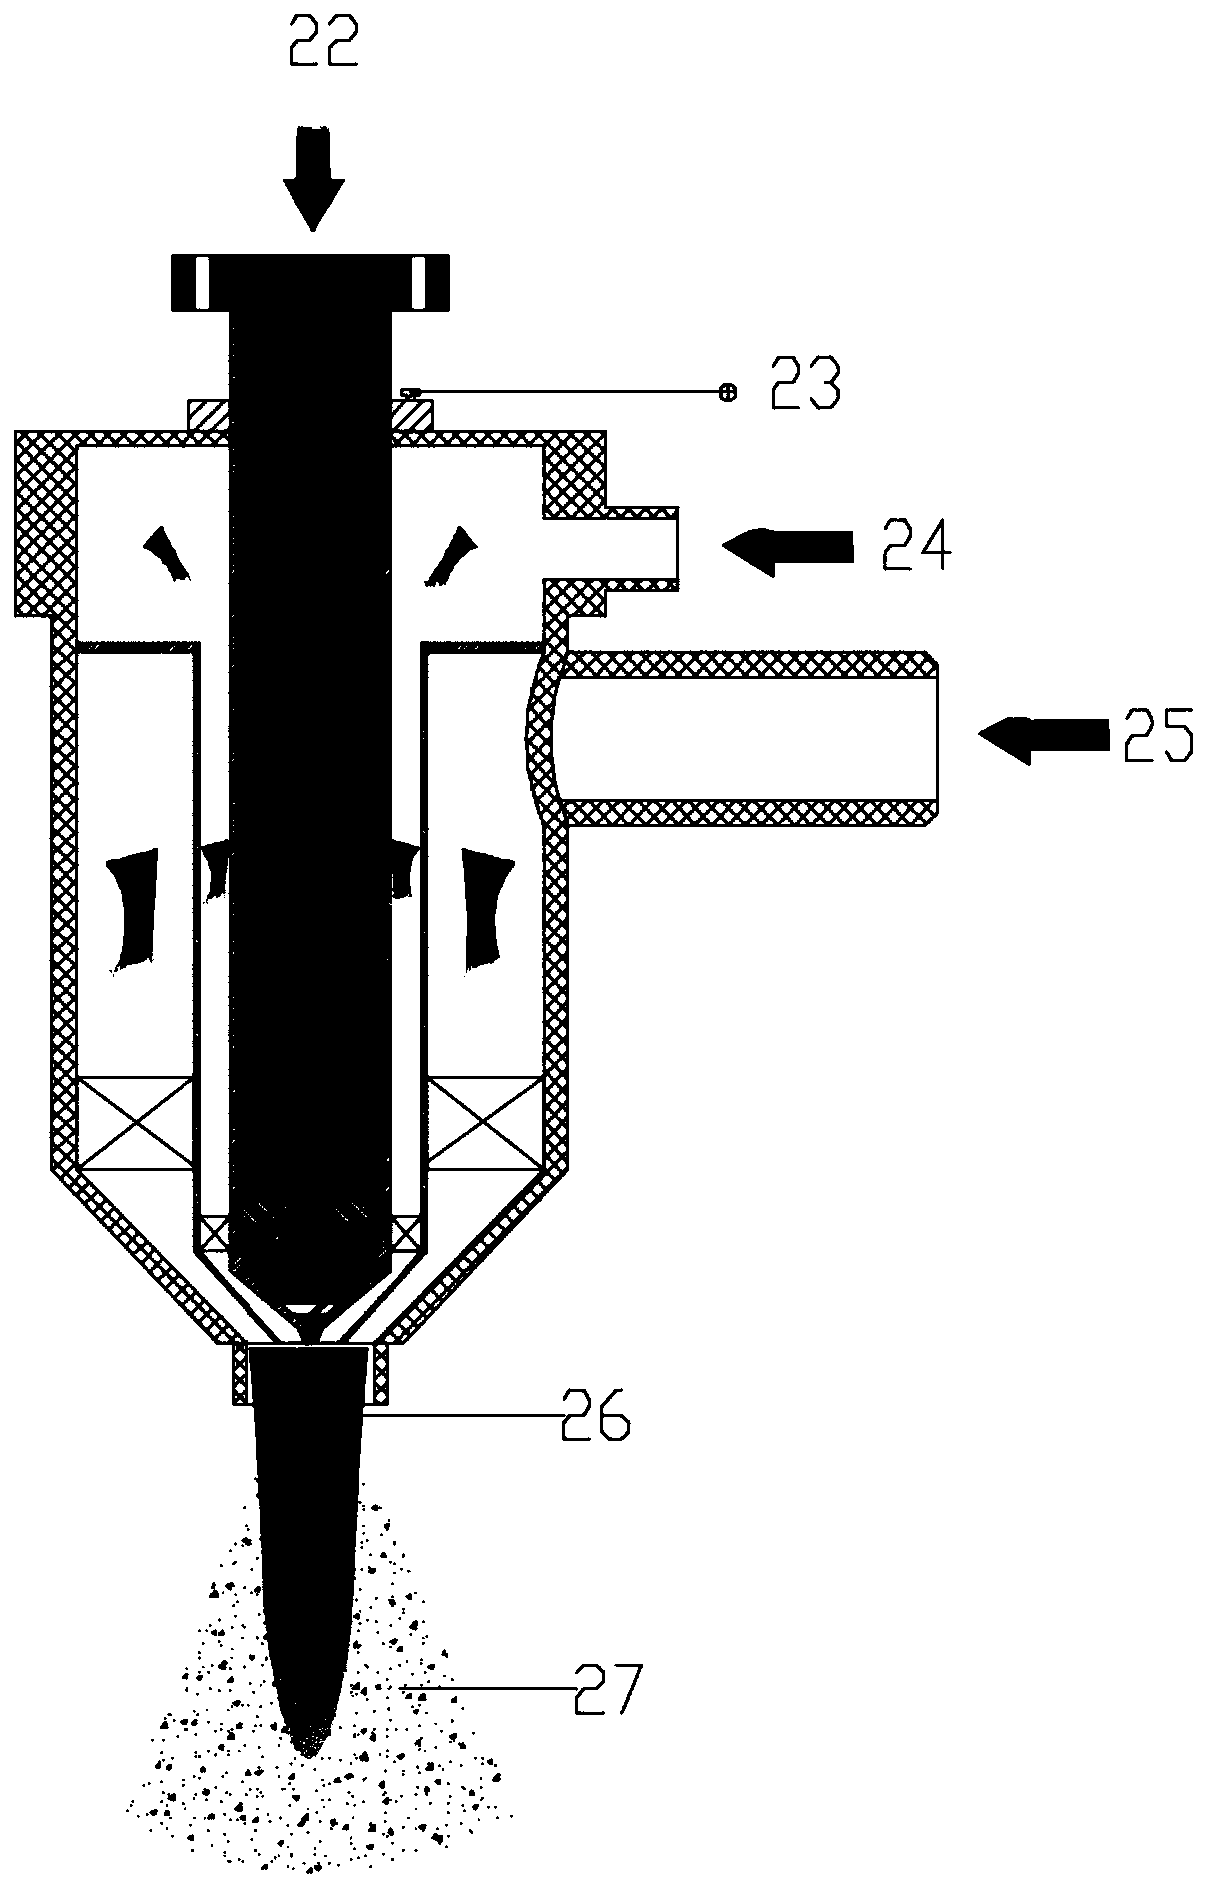 Fuel atomizing nozzle adopting single-electrode plasma jet flow and control method of fuel atomizing nozzle